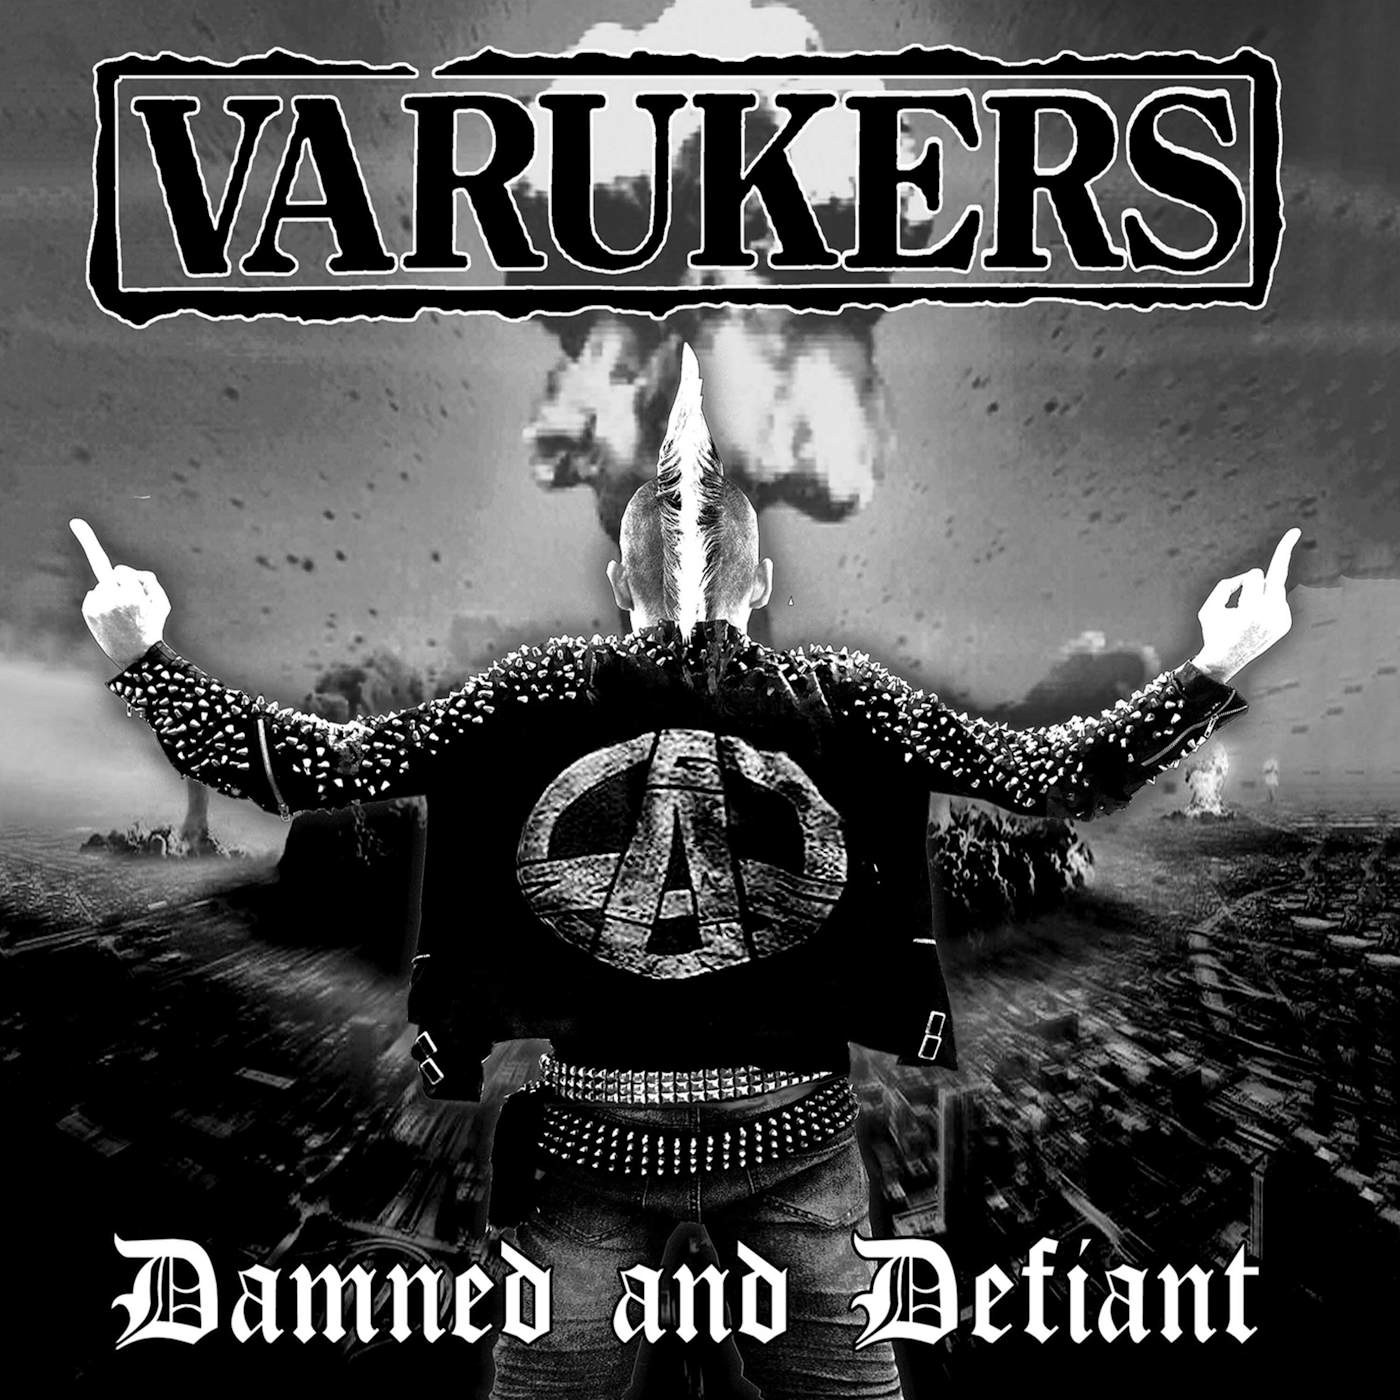 The Varukers DAMNED & DEFIANT CD